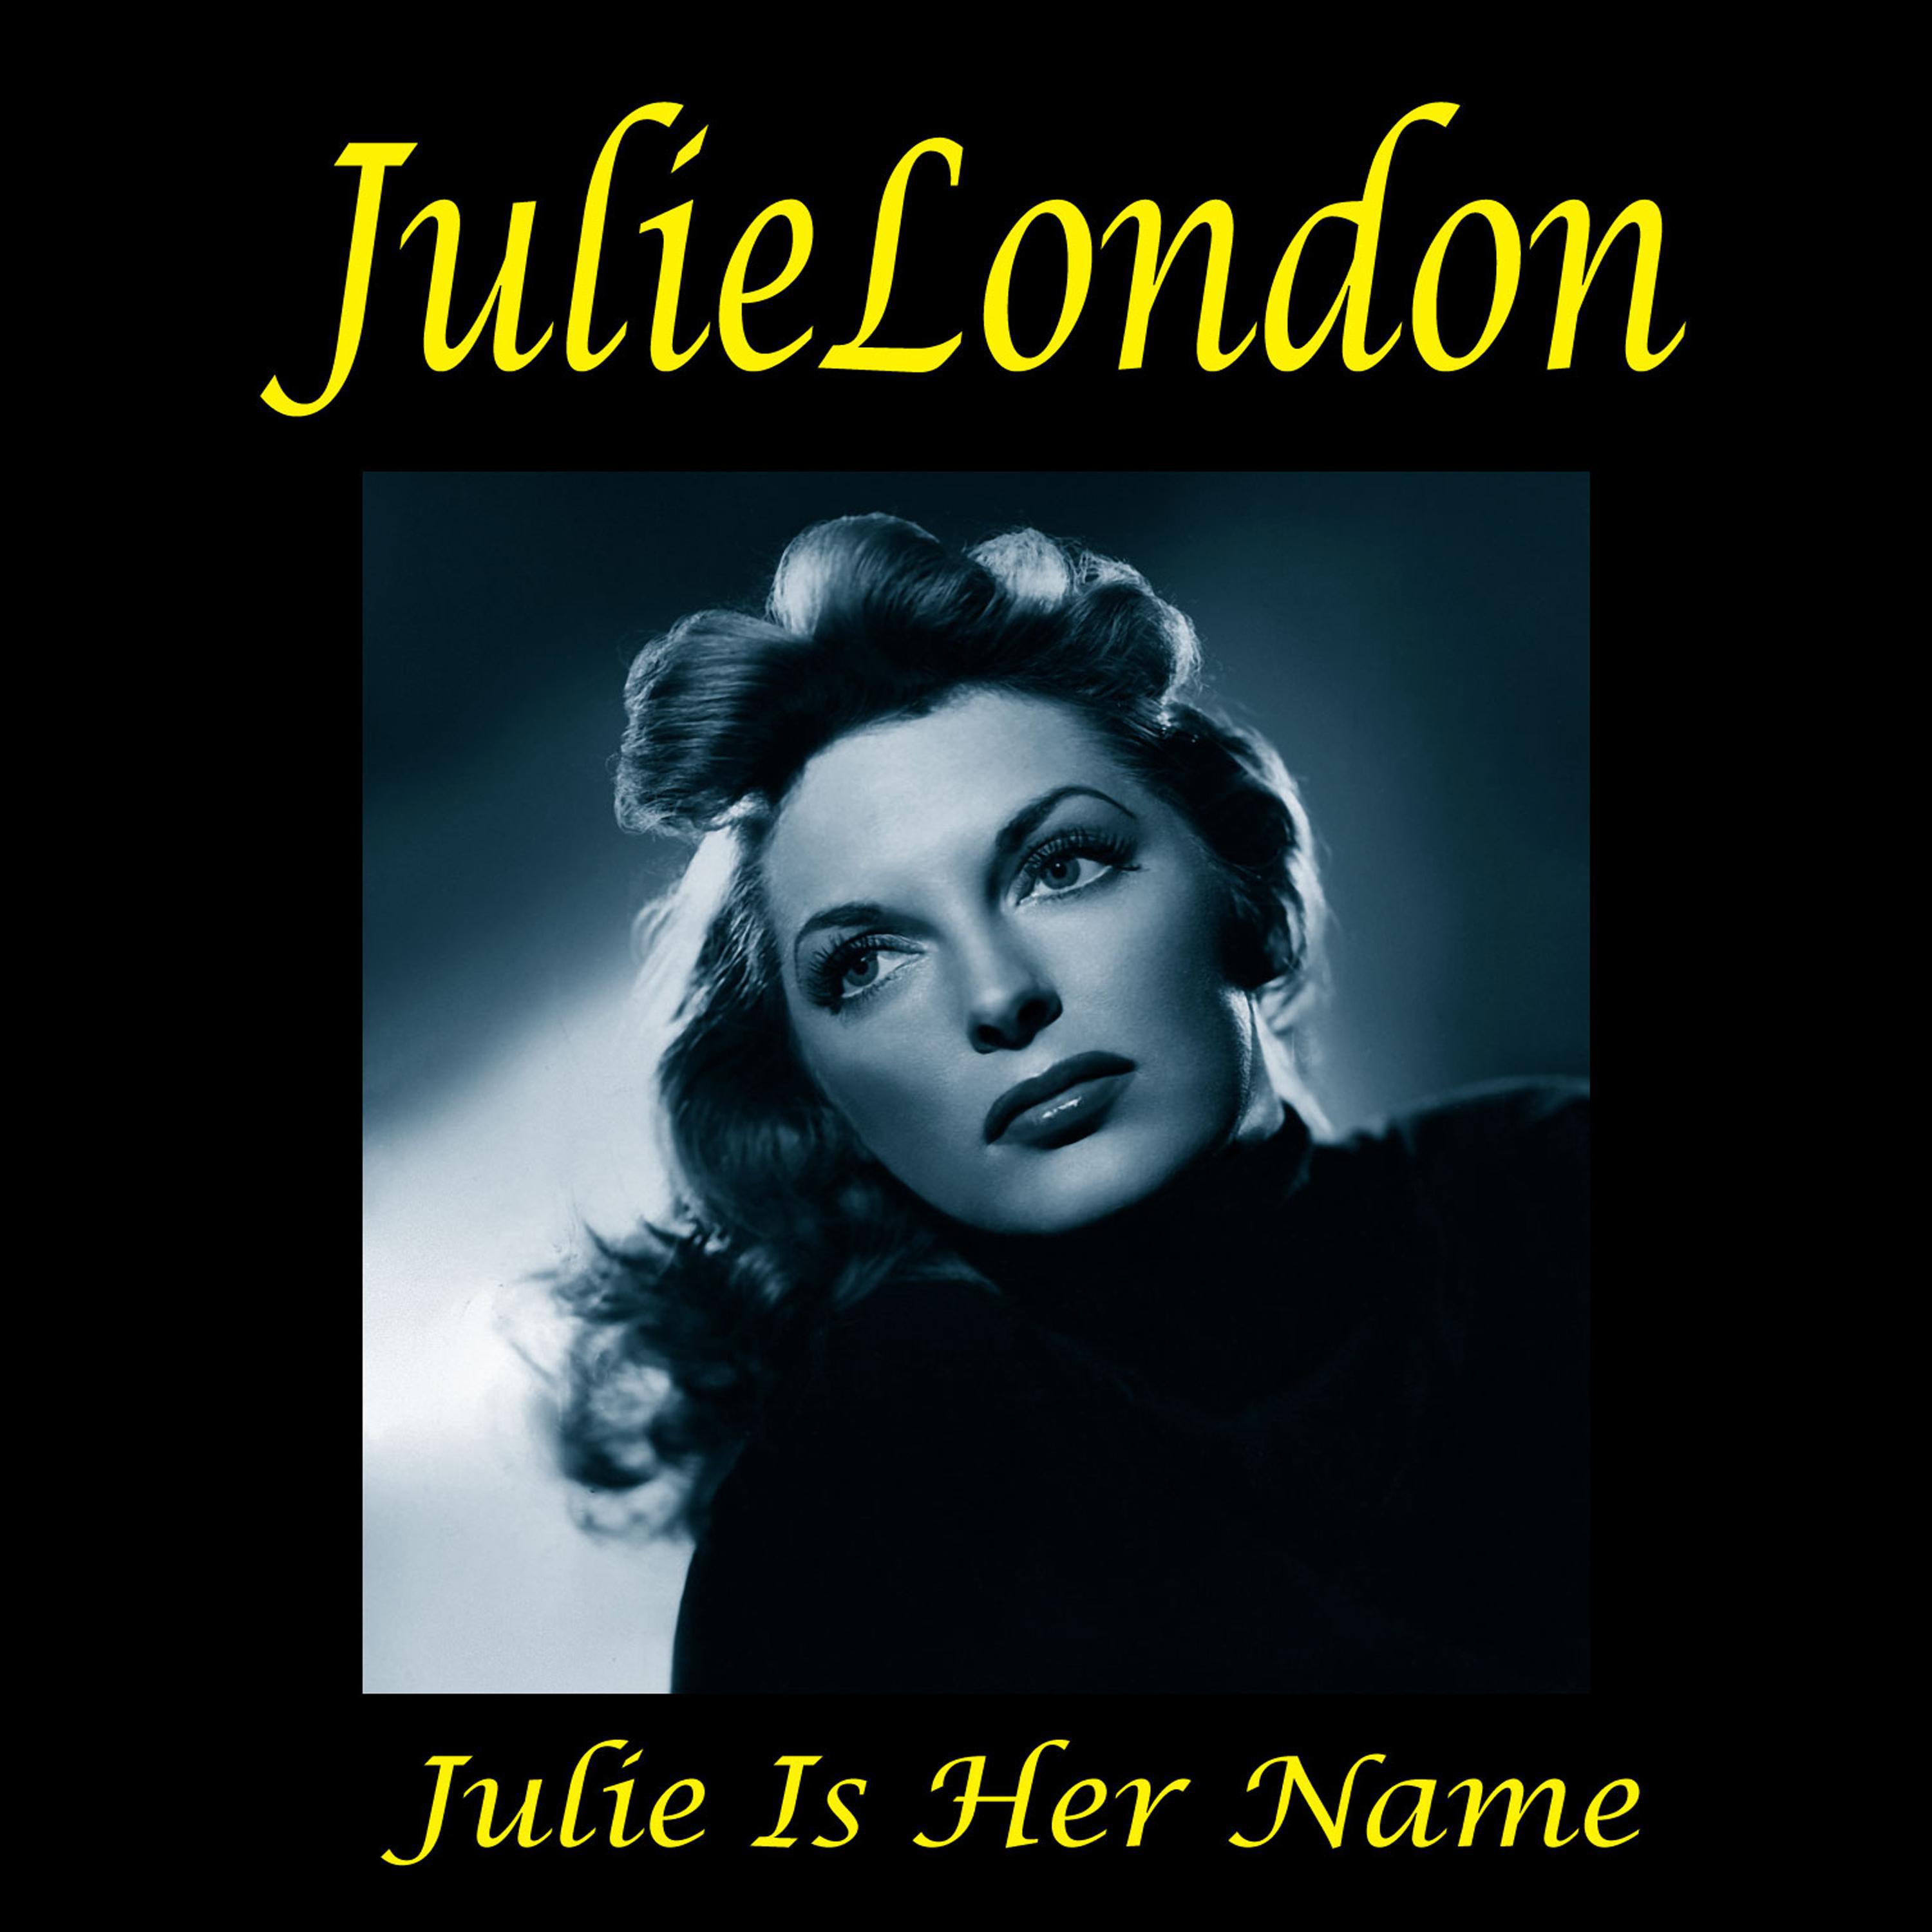 Julie Is Her Name. Complete Sessions (Bonus Track Version)